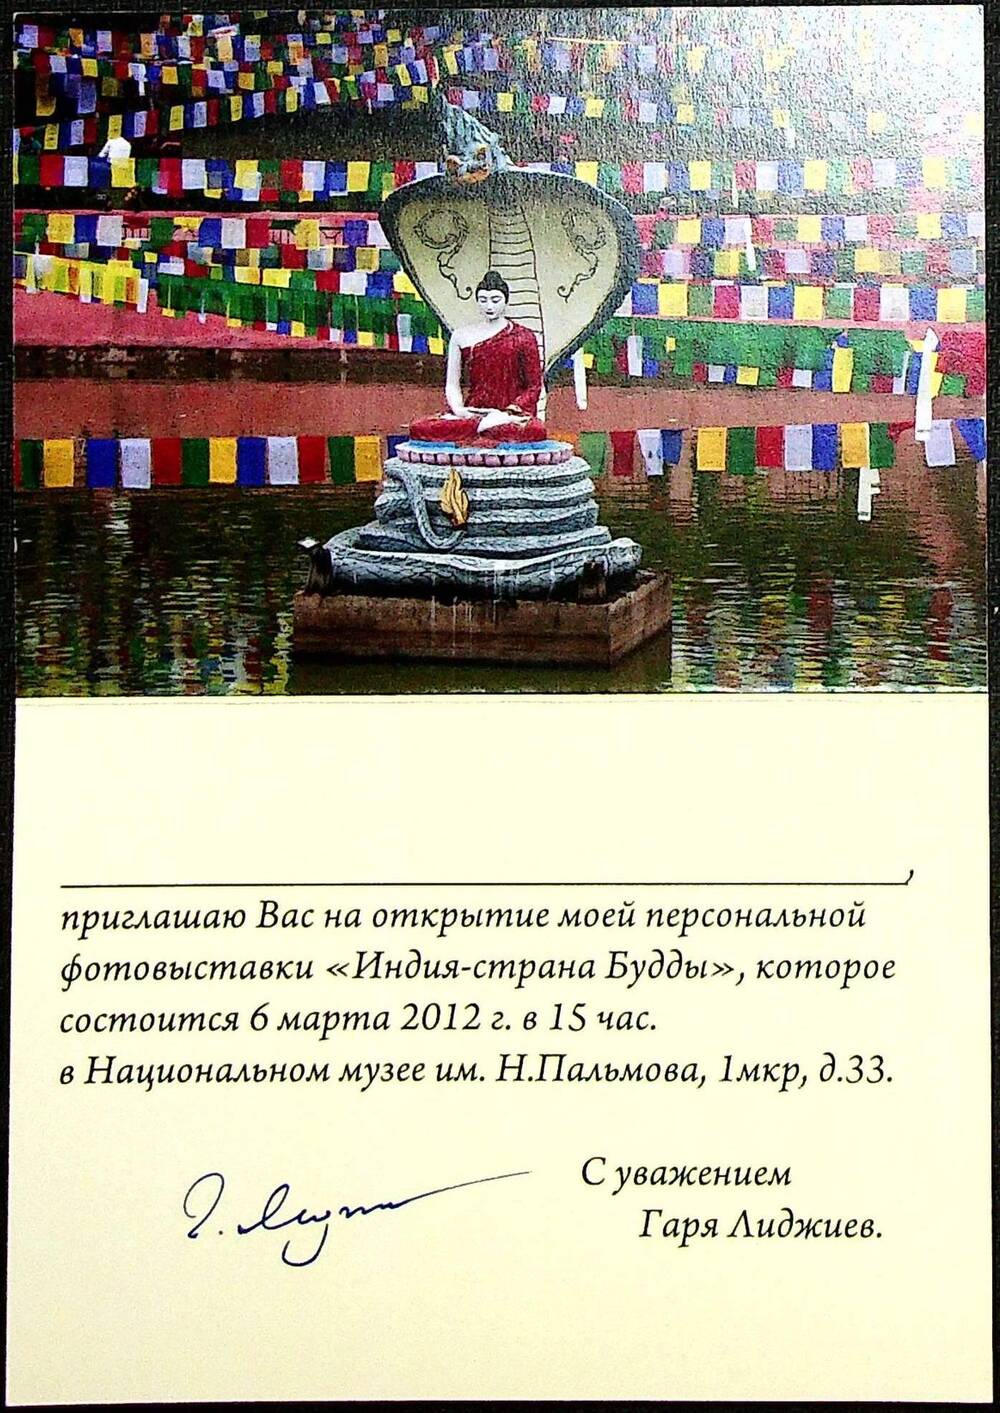 Пригласительный билет на персональную выставку Г. Лиджиева Индия - страна Будды. 2012 г.